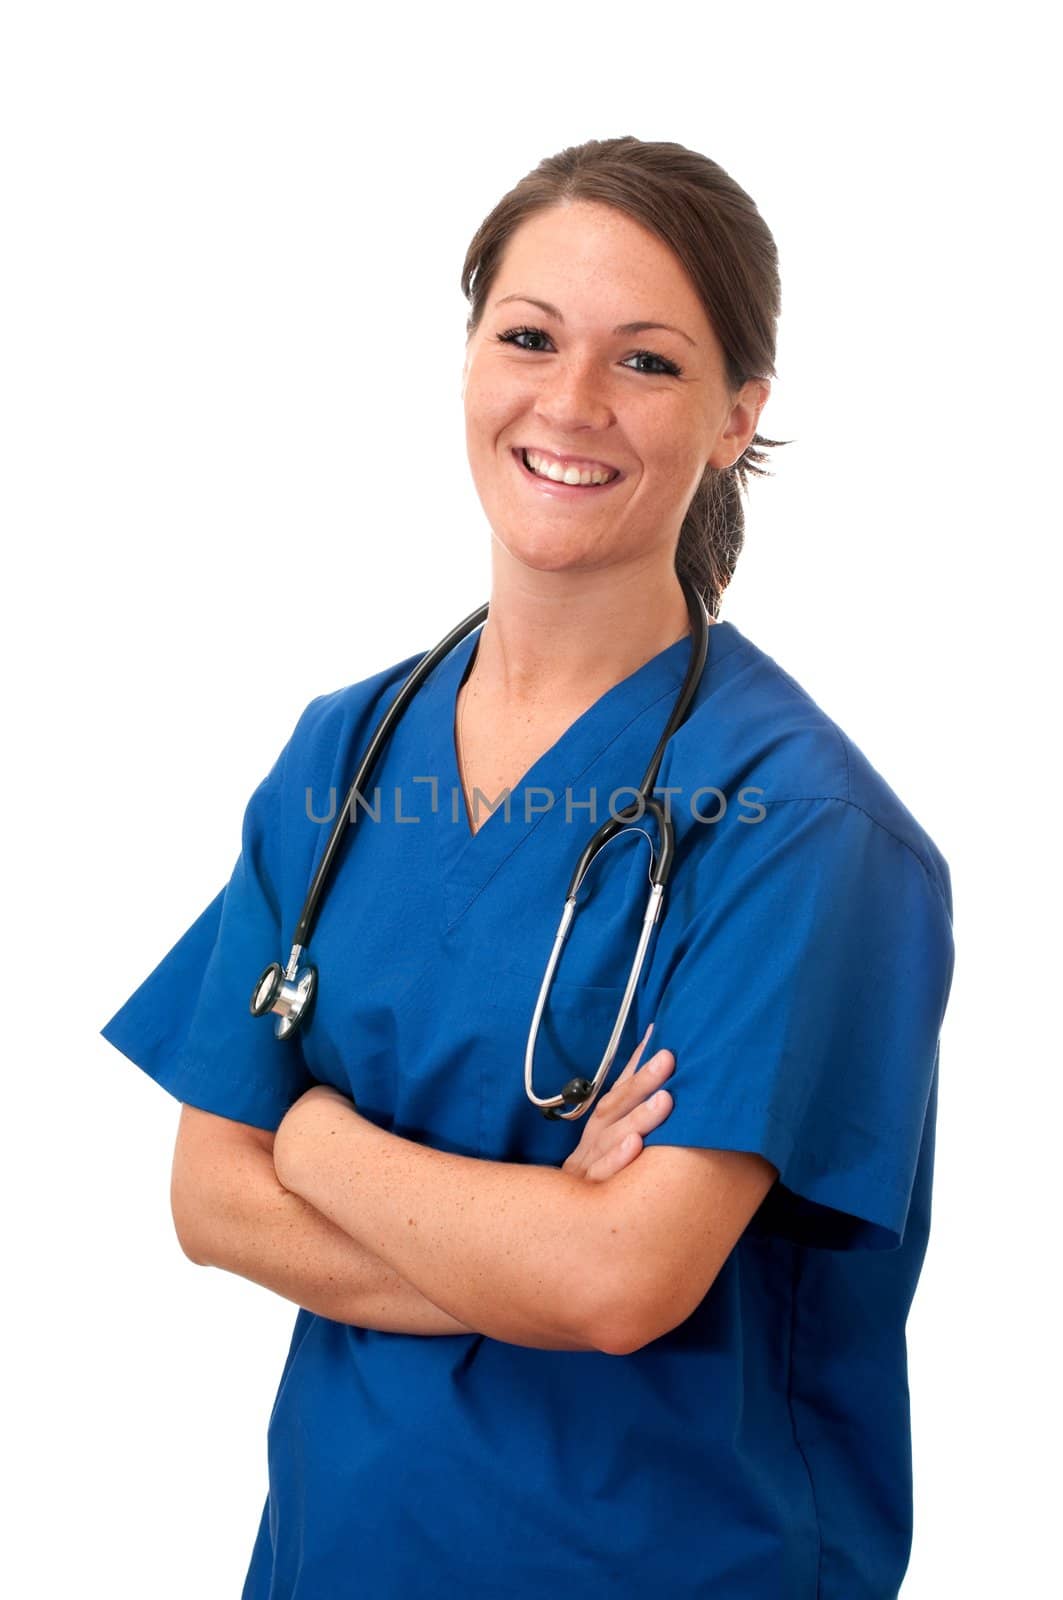 Female nurse with stethoscope isolated on white background.